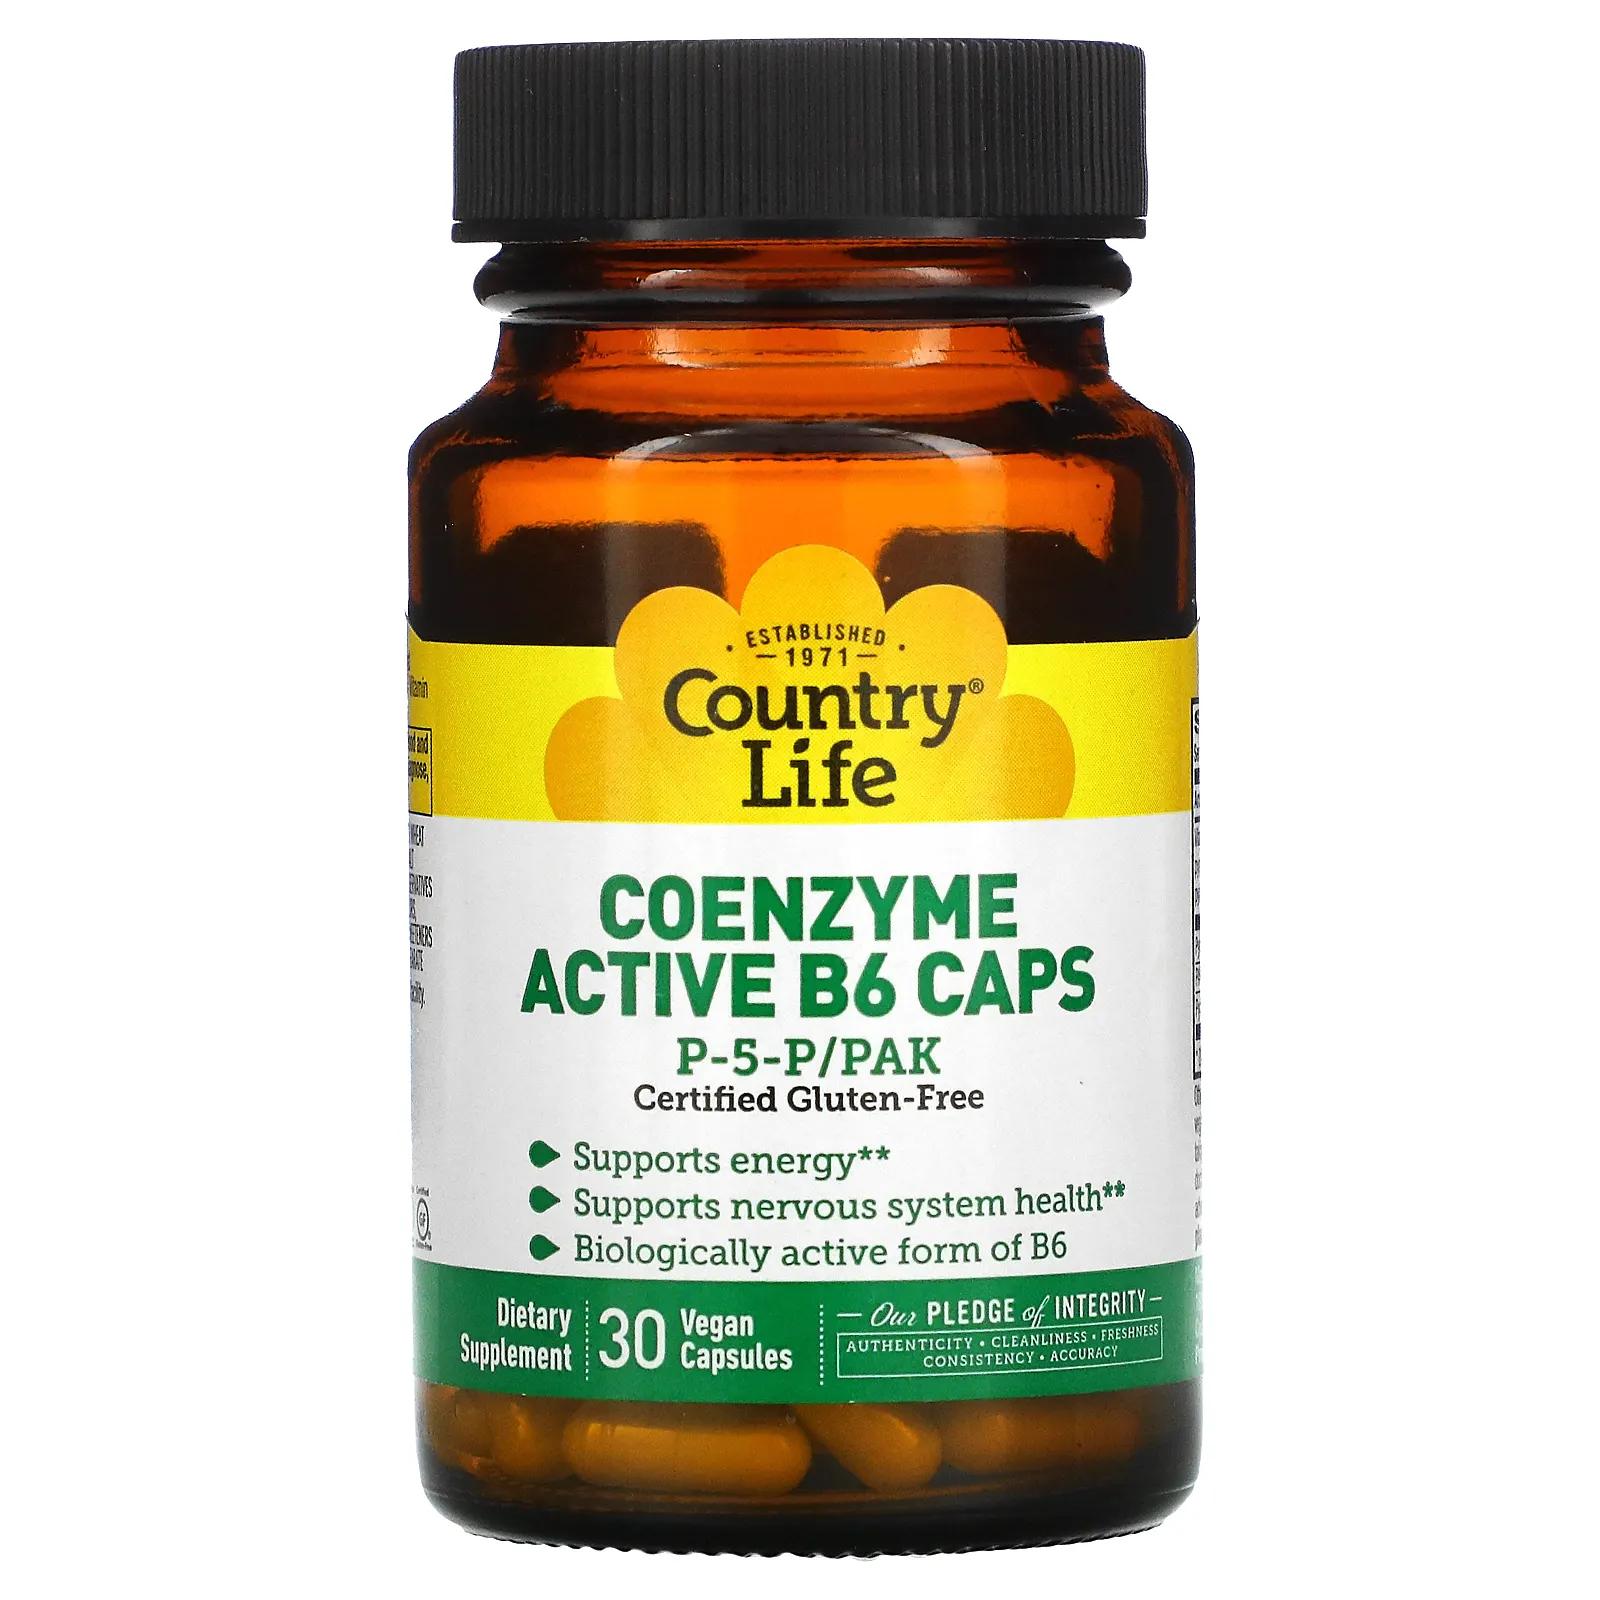 коэнзим с активным витамином b6 country life 30 капсул Country Life Country Life не содержит глютена коферментный активный витамин B6 в капсулах P-5-P/PAK 30 вегетарианских капсул